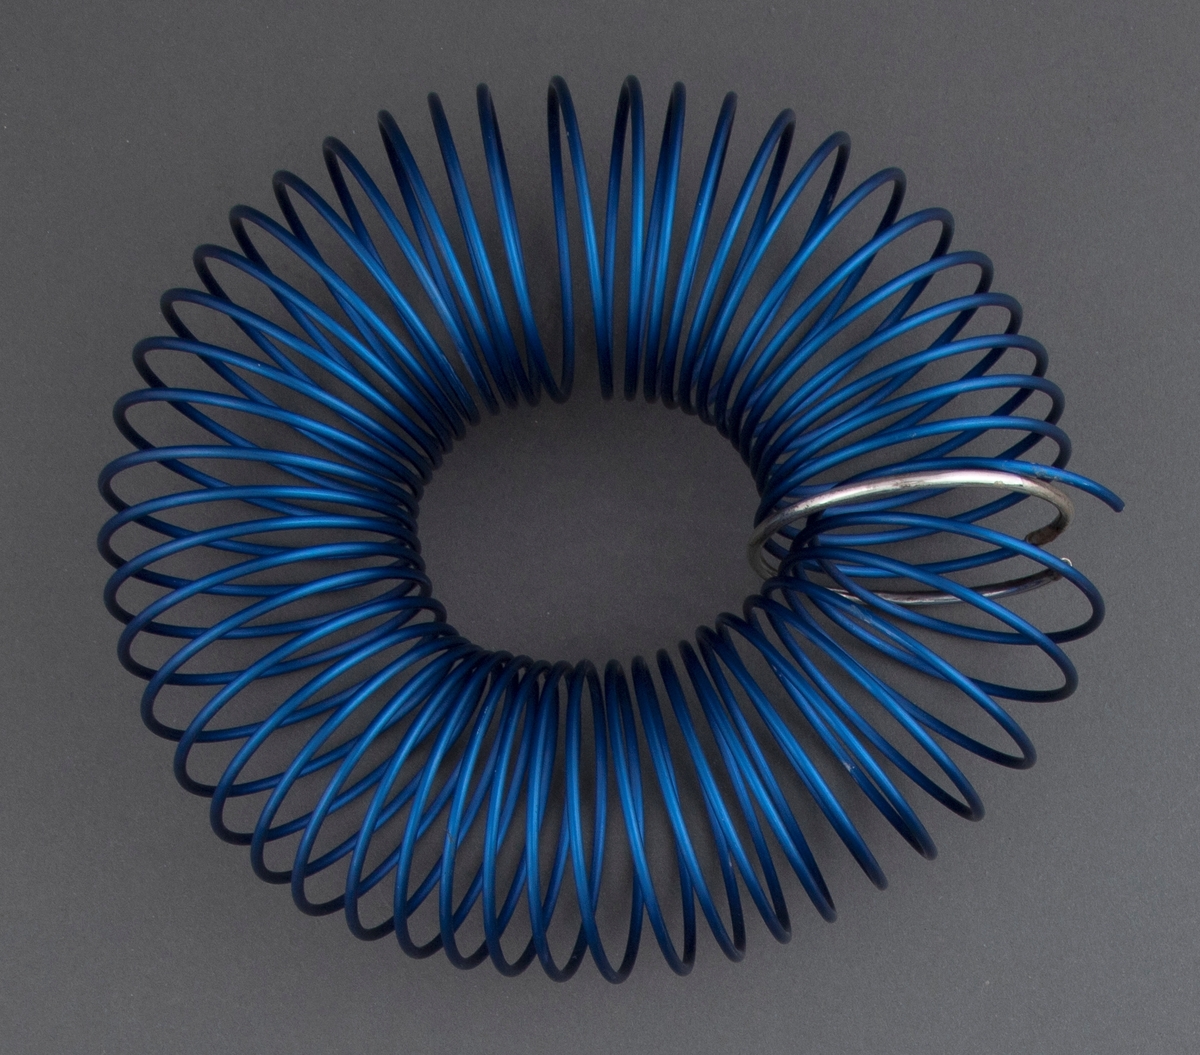 Armsmykke satt sammen av en spiral av blått eloksert aluminium. Ett ledd i spiralen er uført i sølv. Smykket er mykt og føyer seg etter håndleddet, men beholder samtidig sin form.